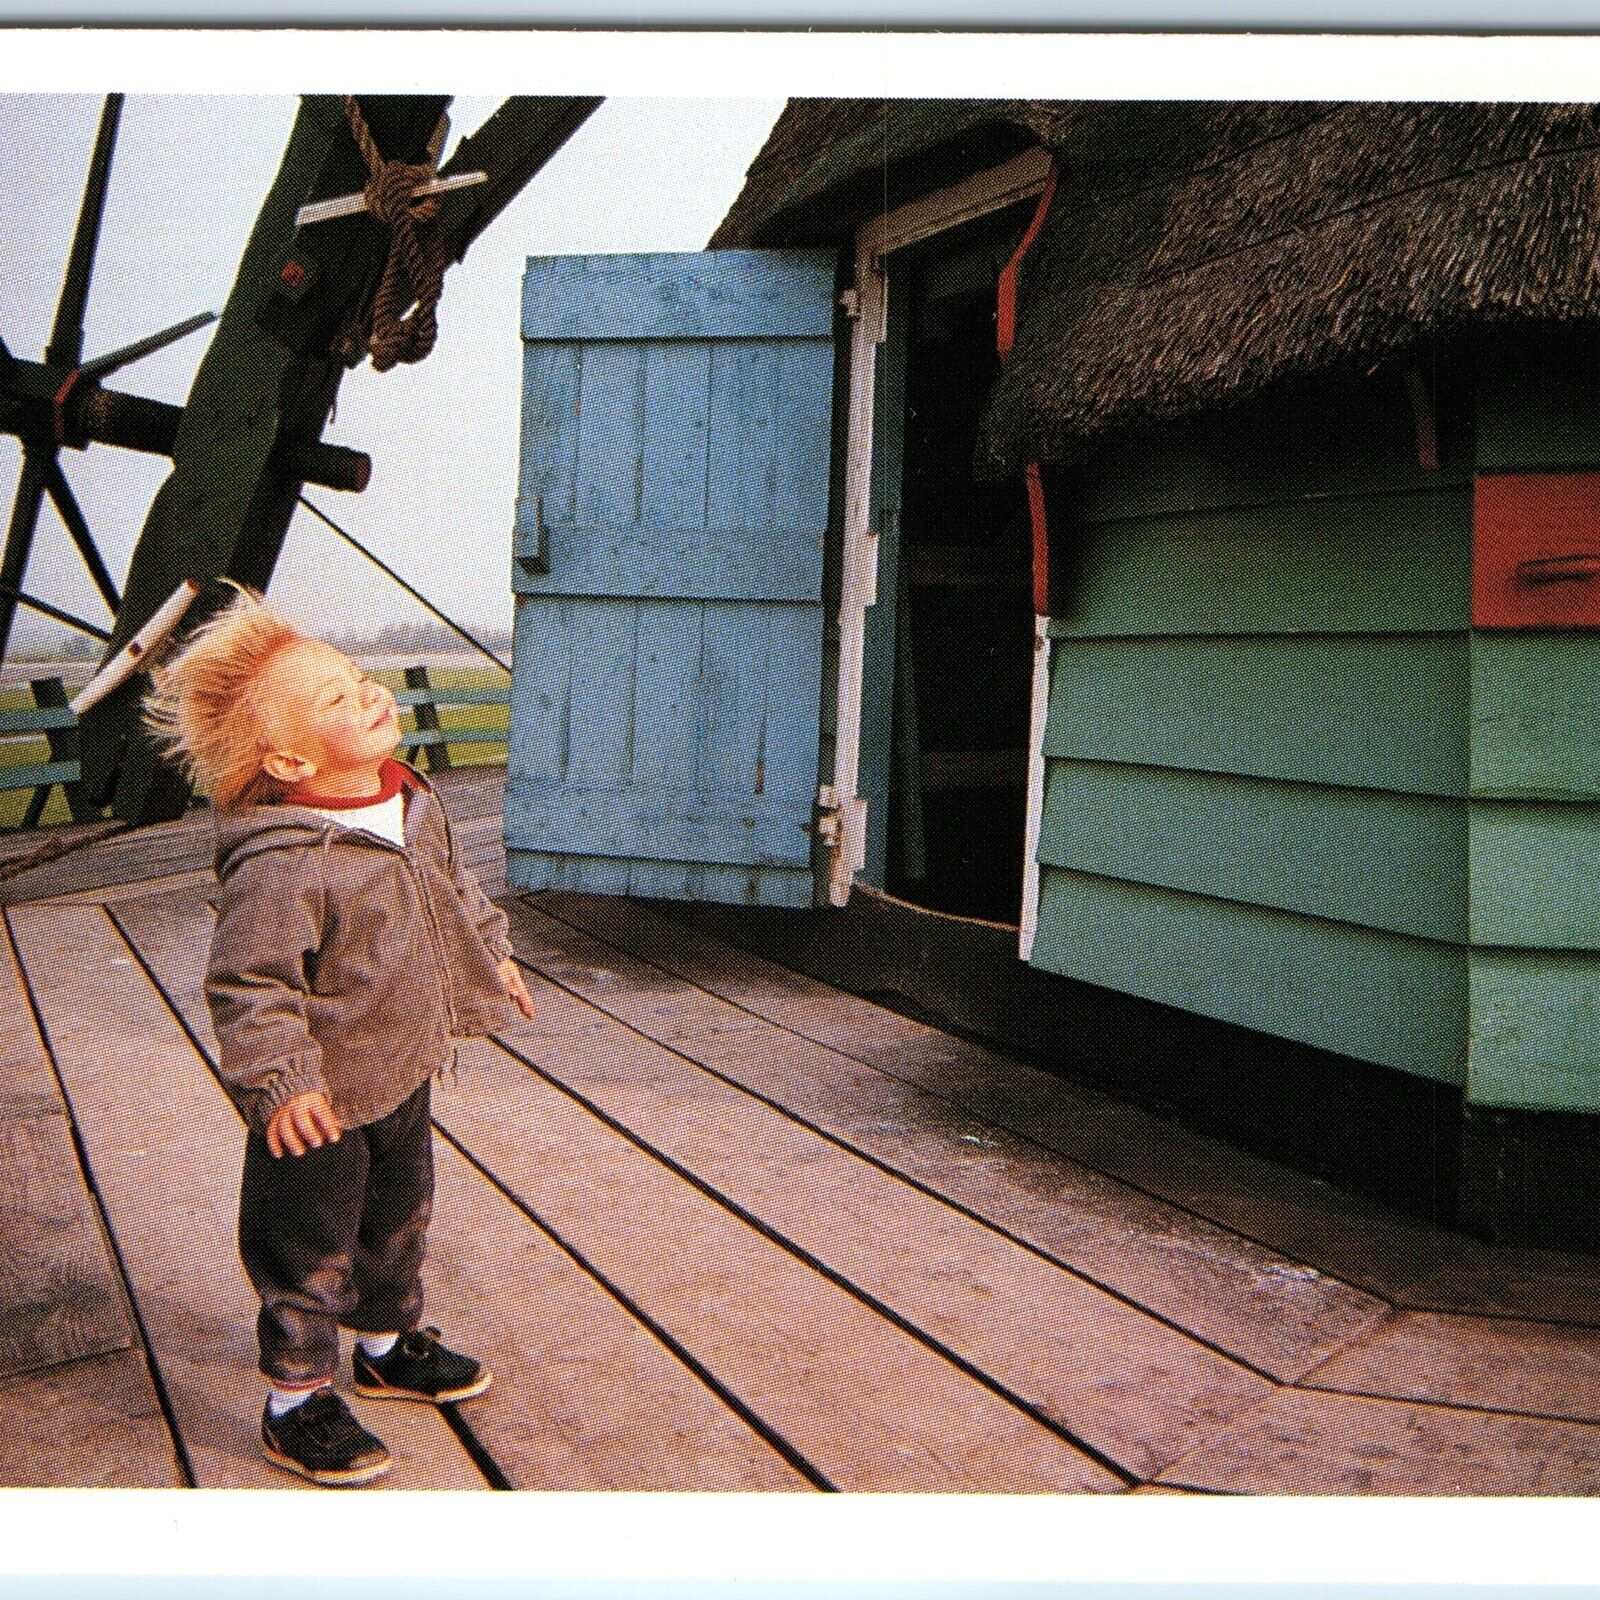 1990 Zaanse Schans Netherlands Windmill Boy Wind Winner Photo Contest Print A225